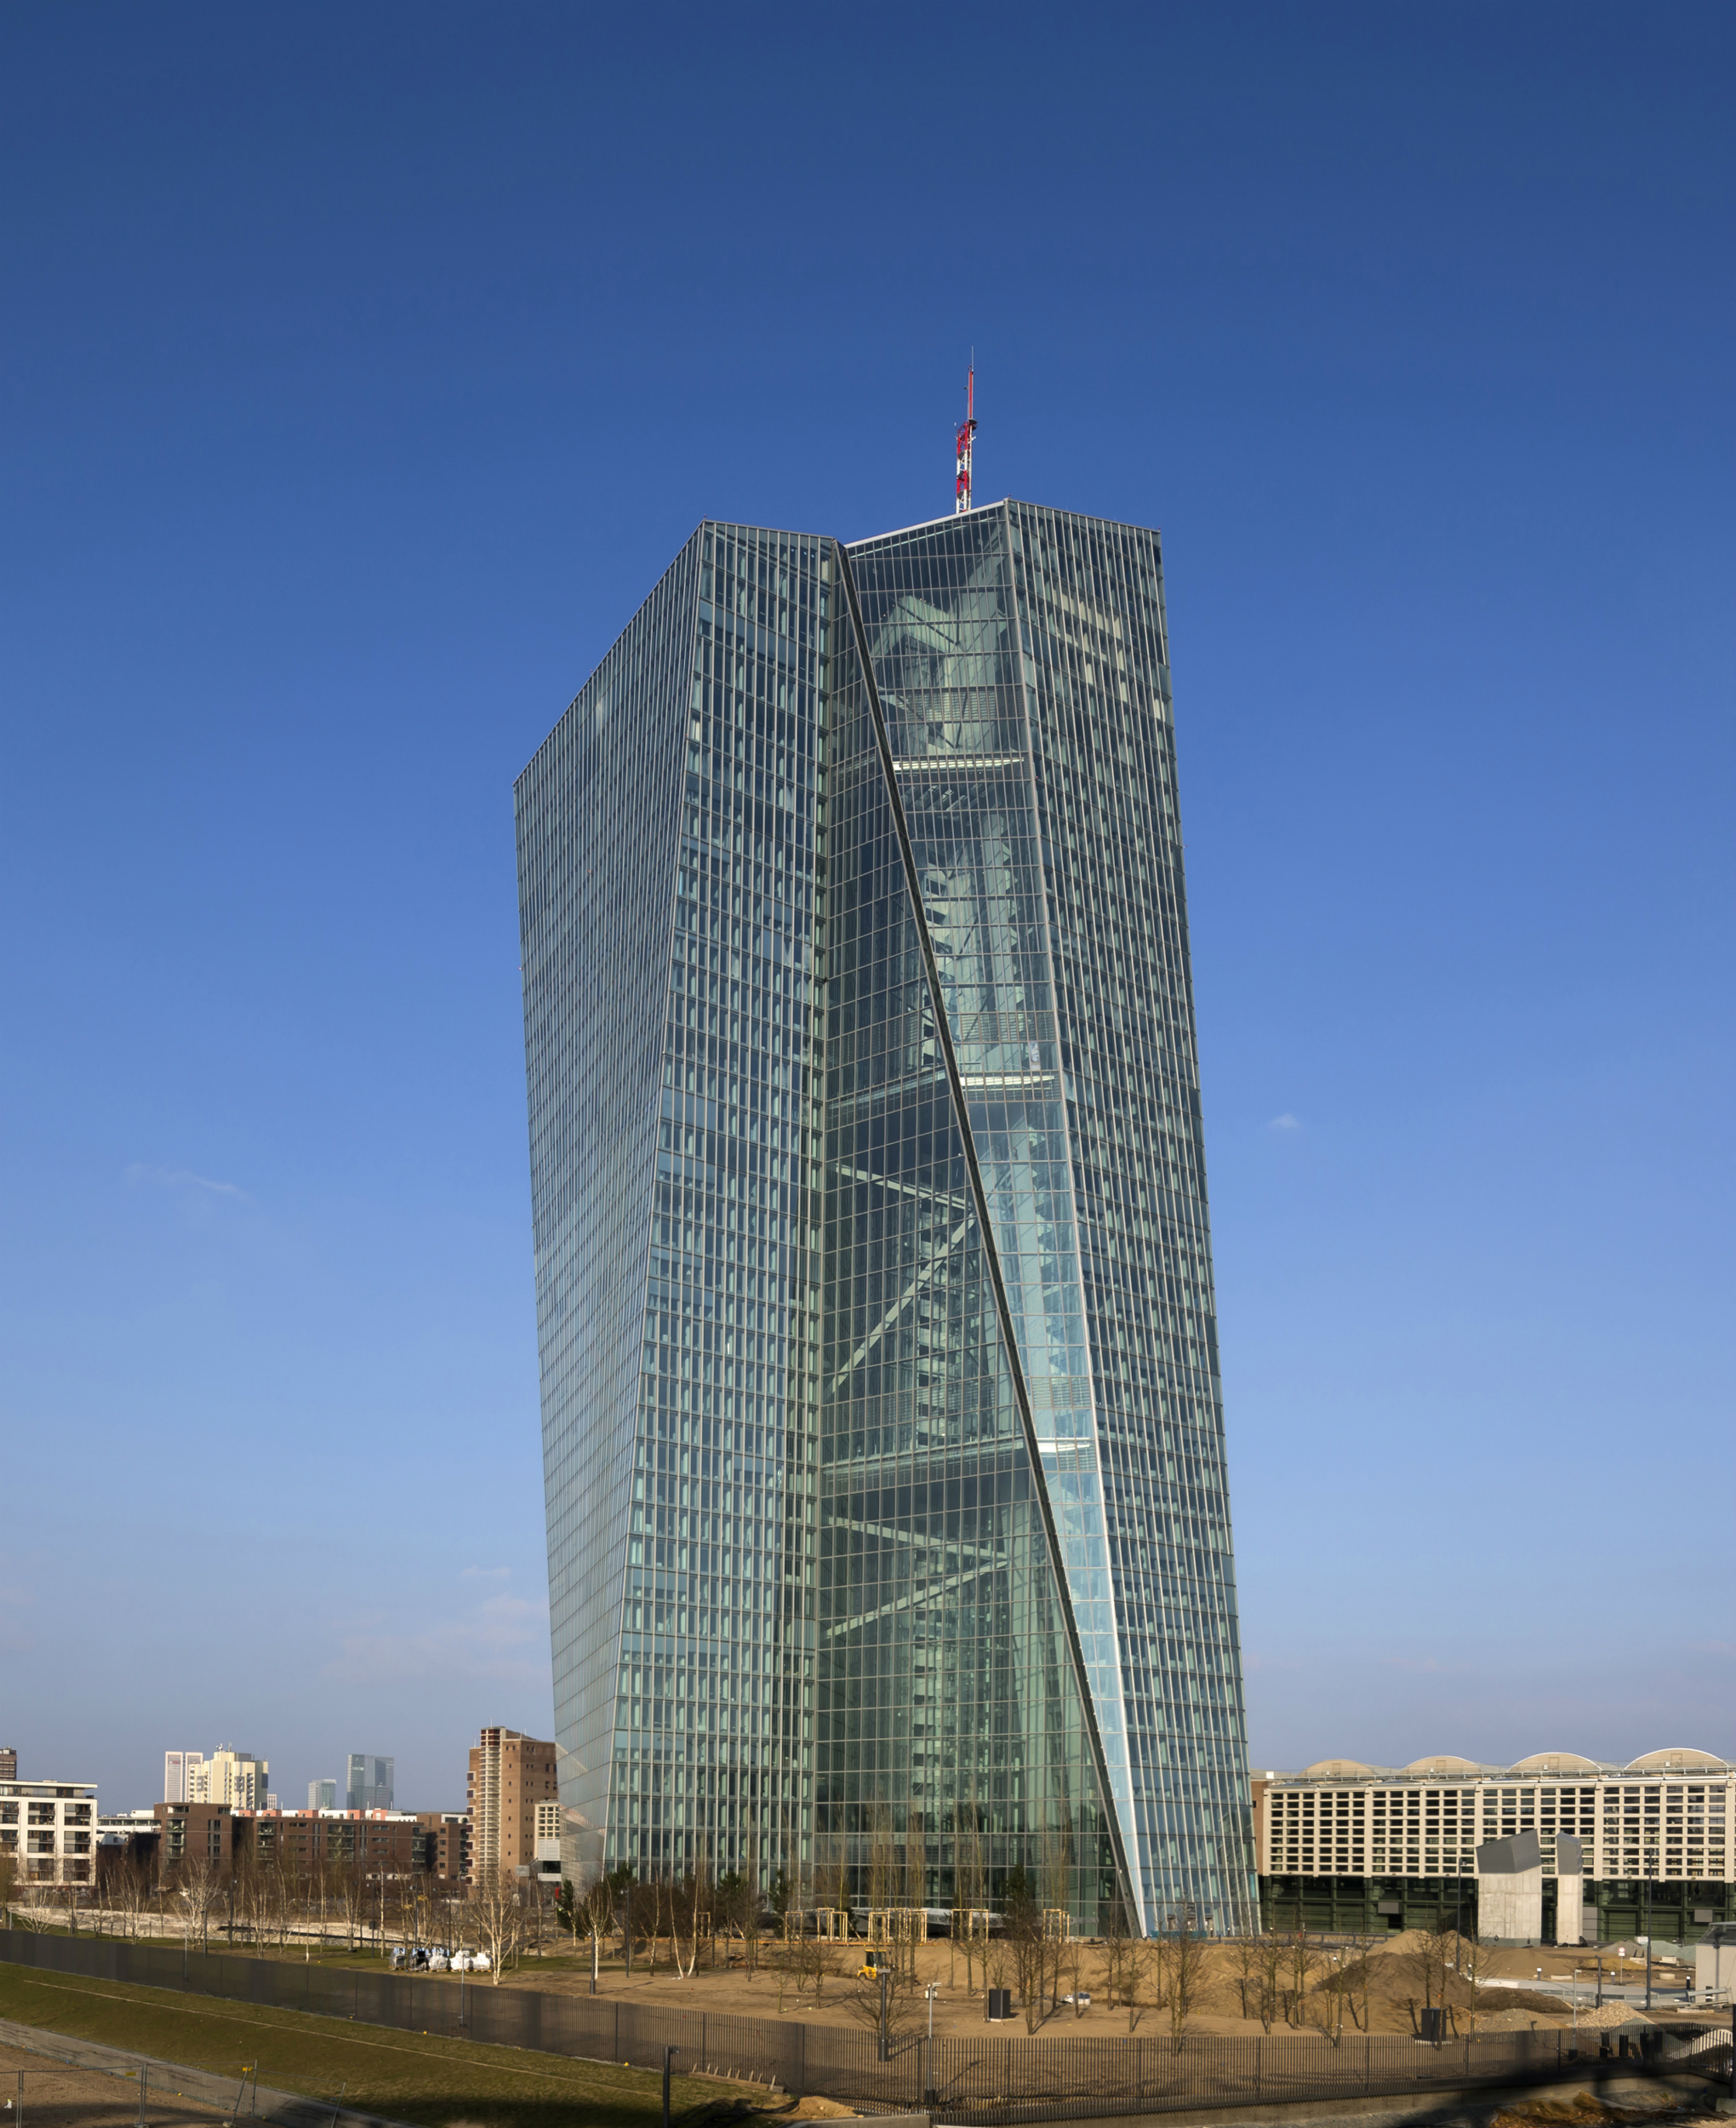 Imagen de la estrucuta del European Central Bank, en Fráncfort, Alemania. Foto: Paul Raftery. Foto cedida por The Council on Tall Buildings and Urban Habitat (CTBUH).